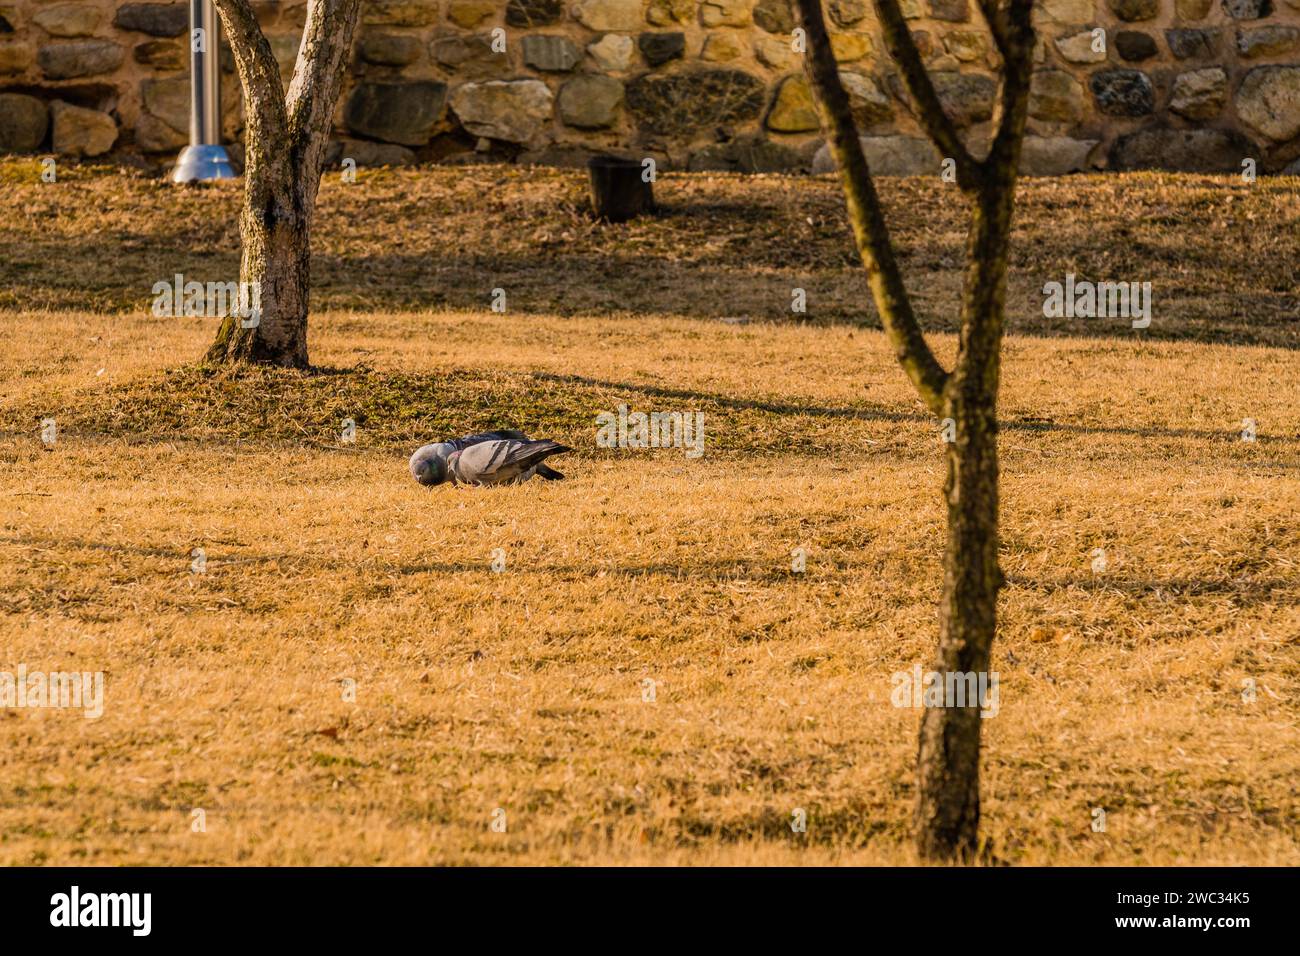 Stormo di piccioni a terra che si nutrono in un parco in una mattinata di sole Foto Stock